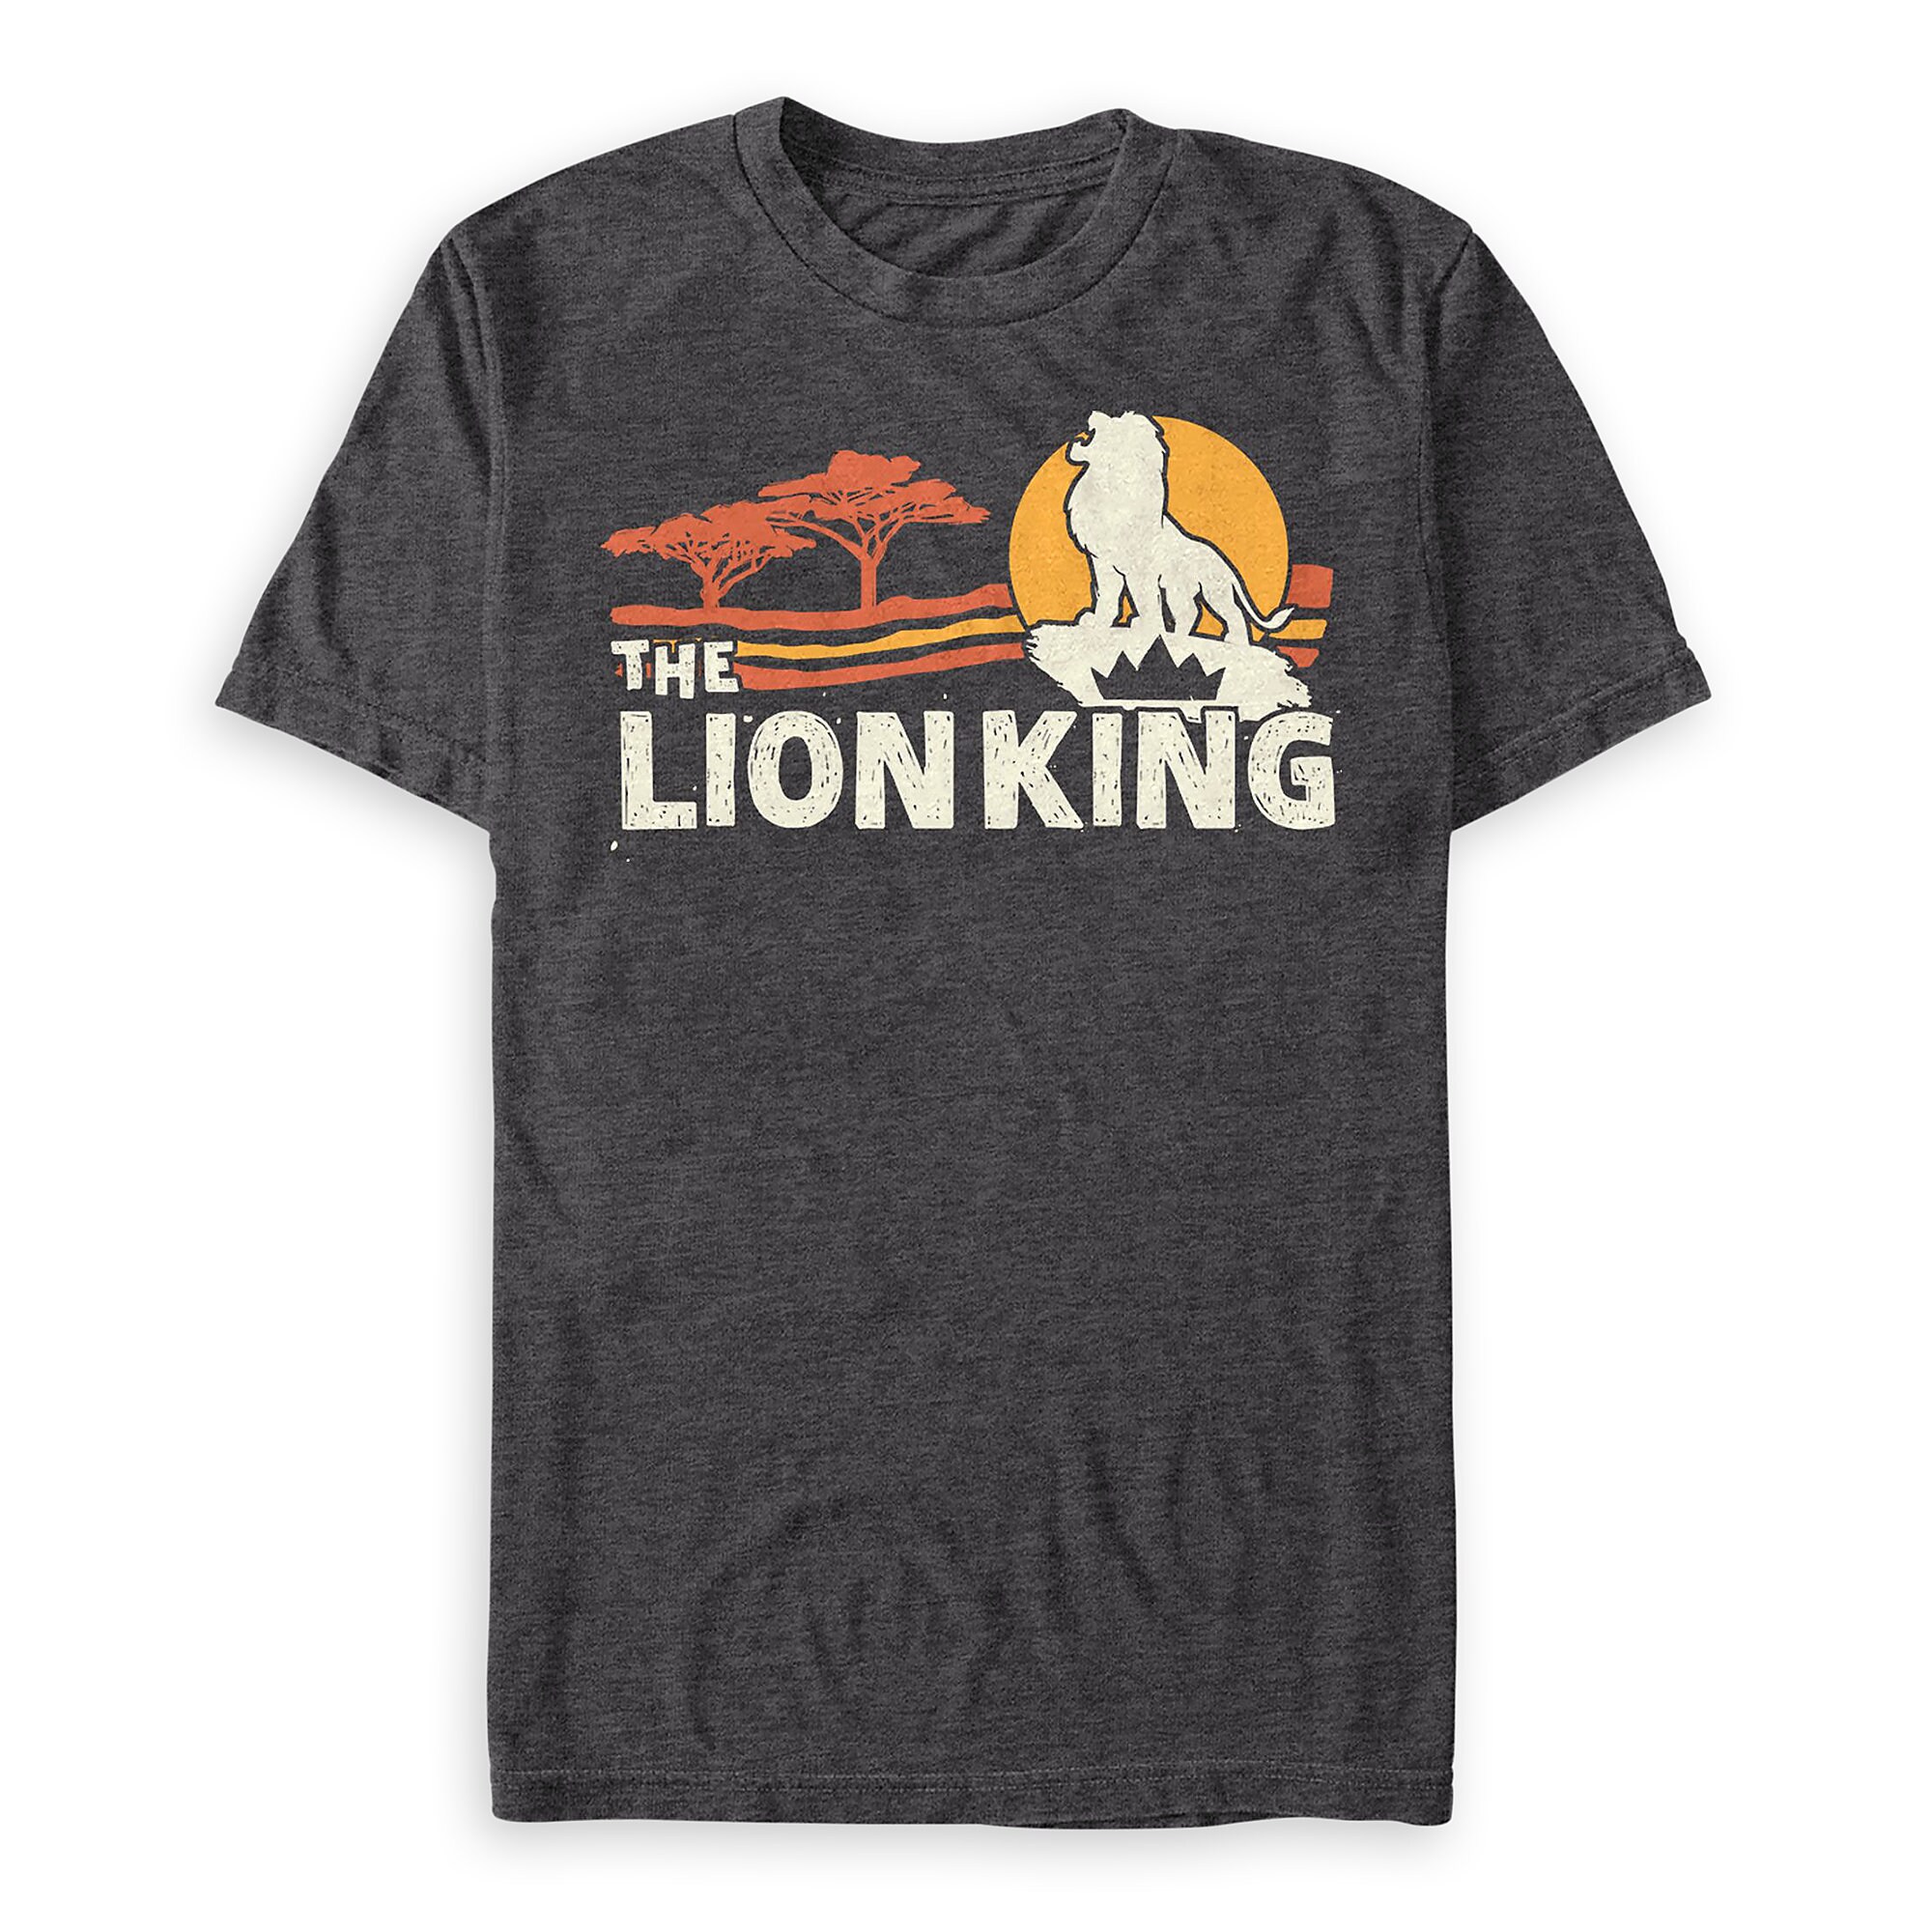 The Lion King T-Shirt for Men - 2019 Film